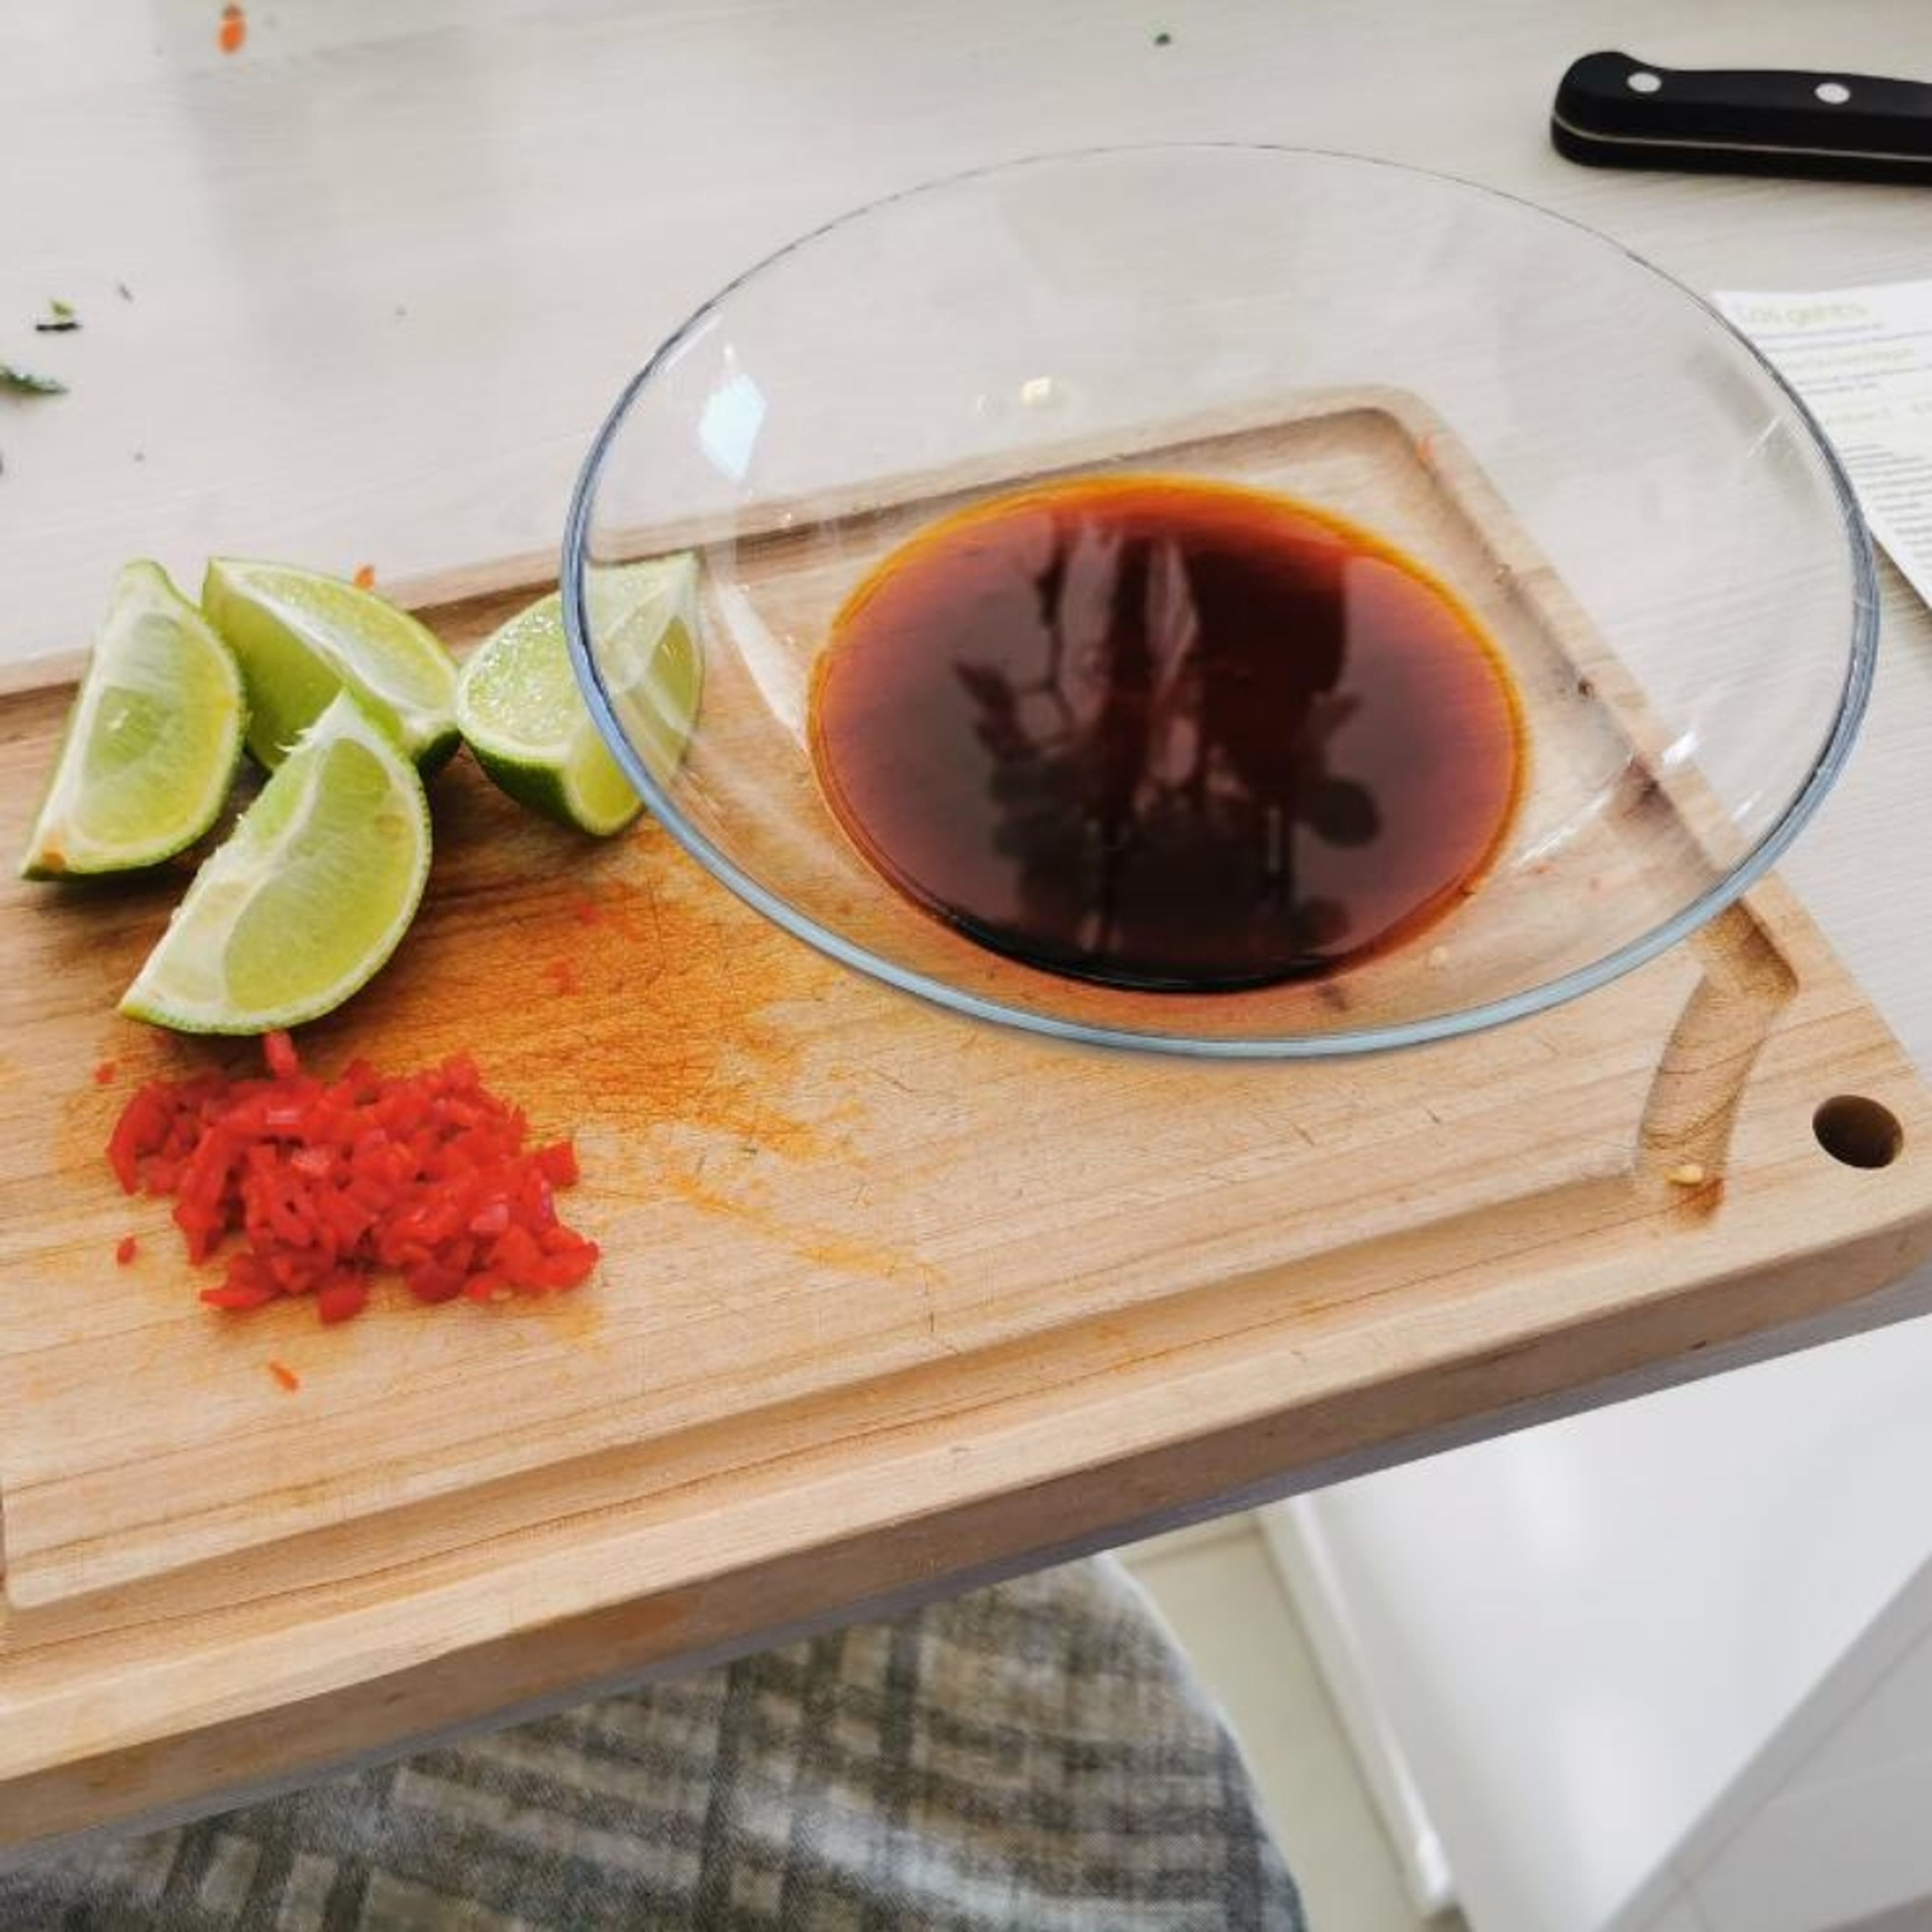 Soße zubereiten. Eine Limette vierteln, ausdrücken und Saft der Limette , sowie die fein gehackte chili verühren mit der Sojasoße.